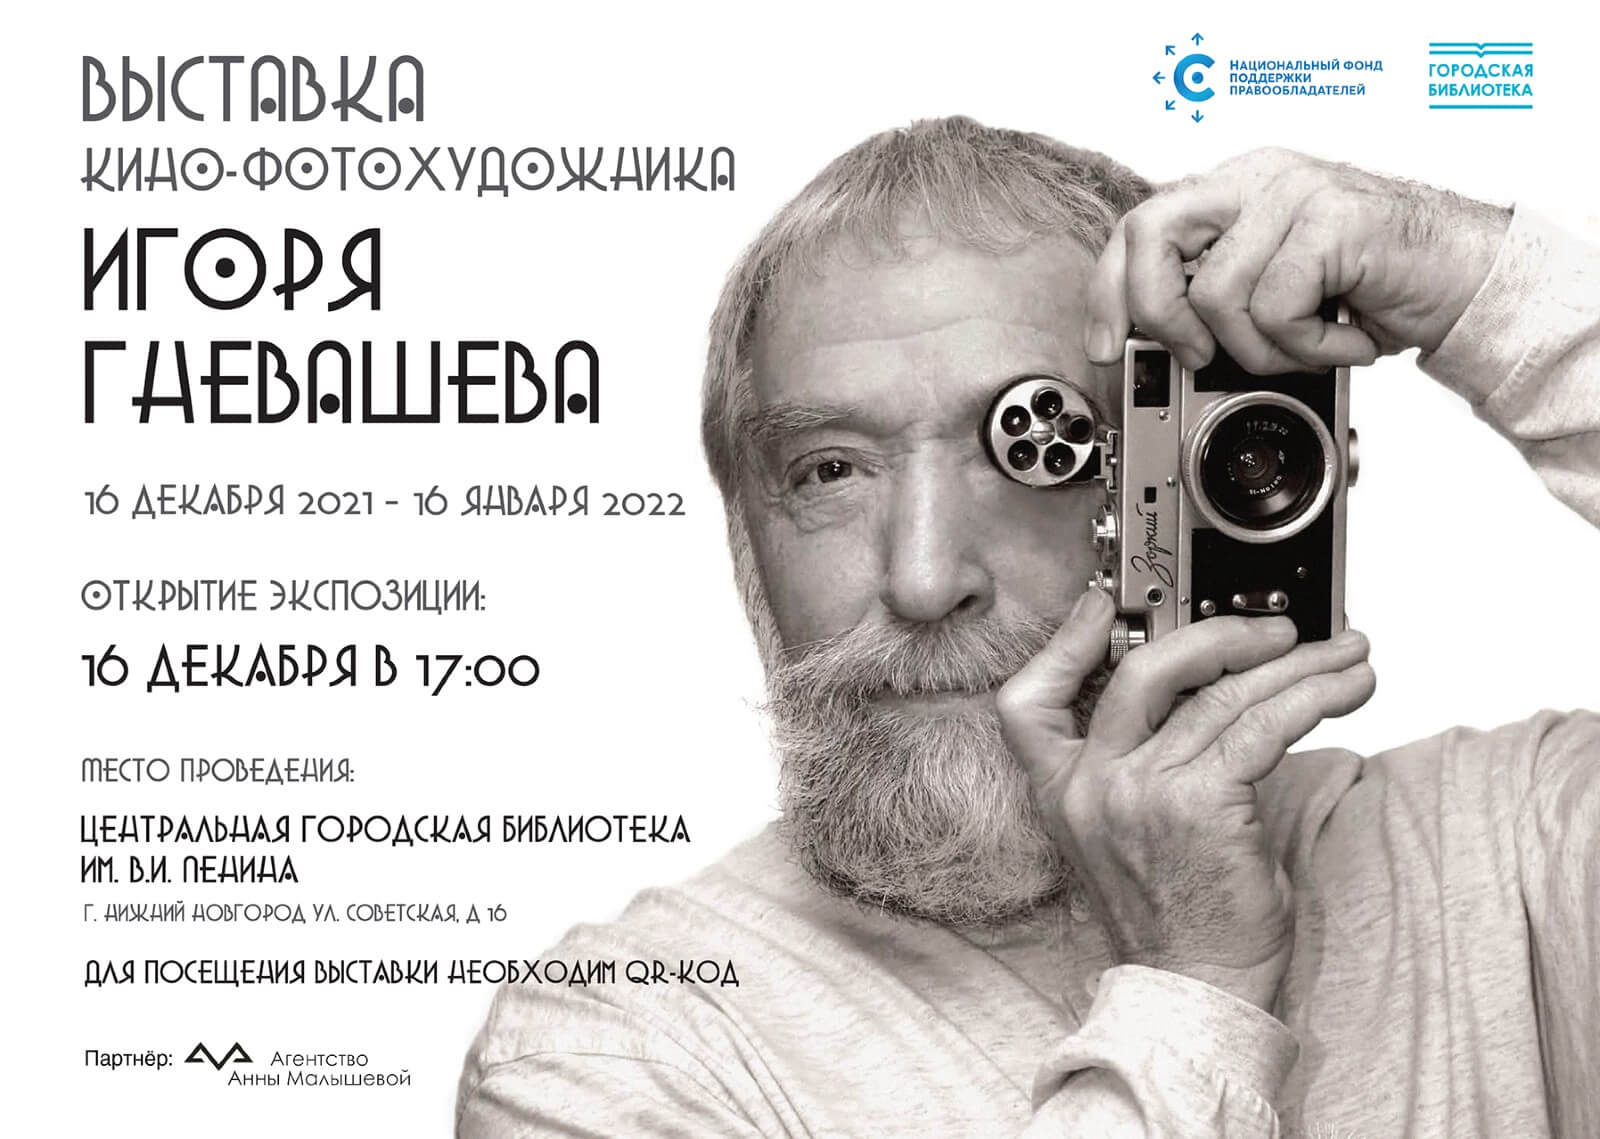 В Нижнем Новгороде пройдет выставка работ Игоря Гневашева, организованная НФПП